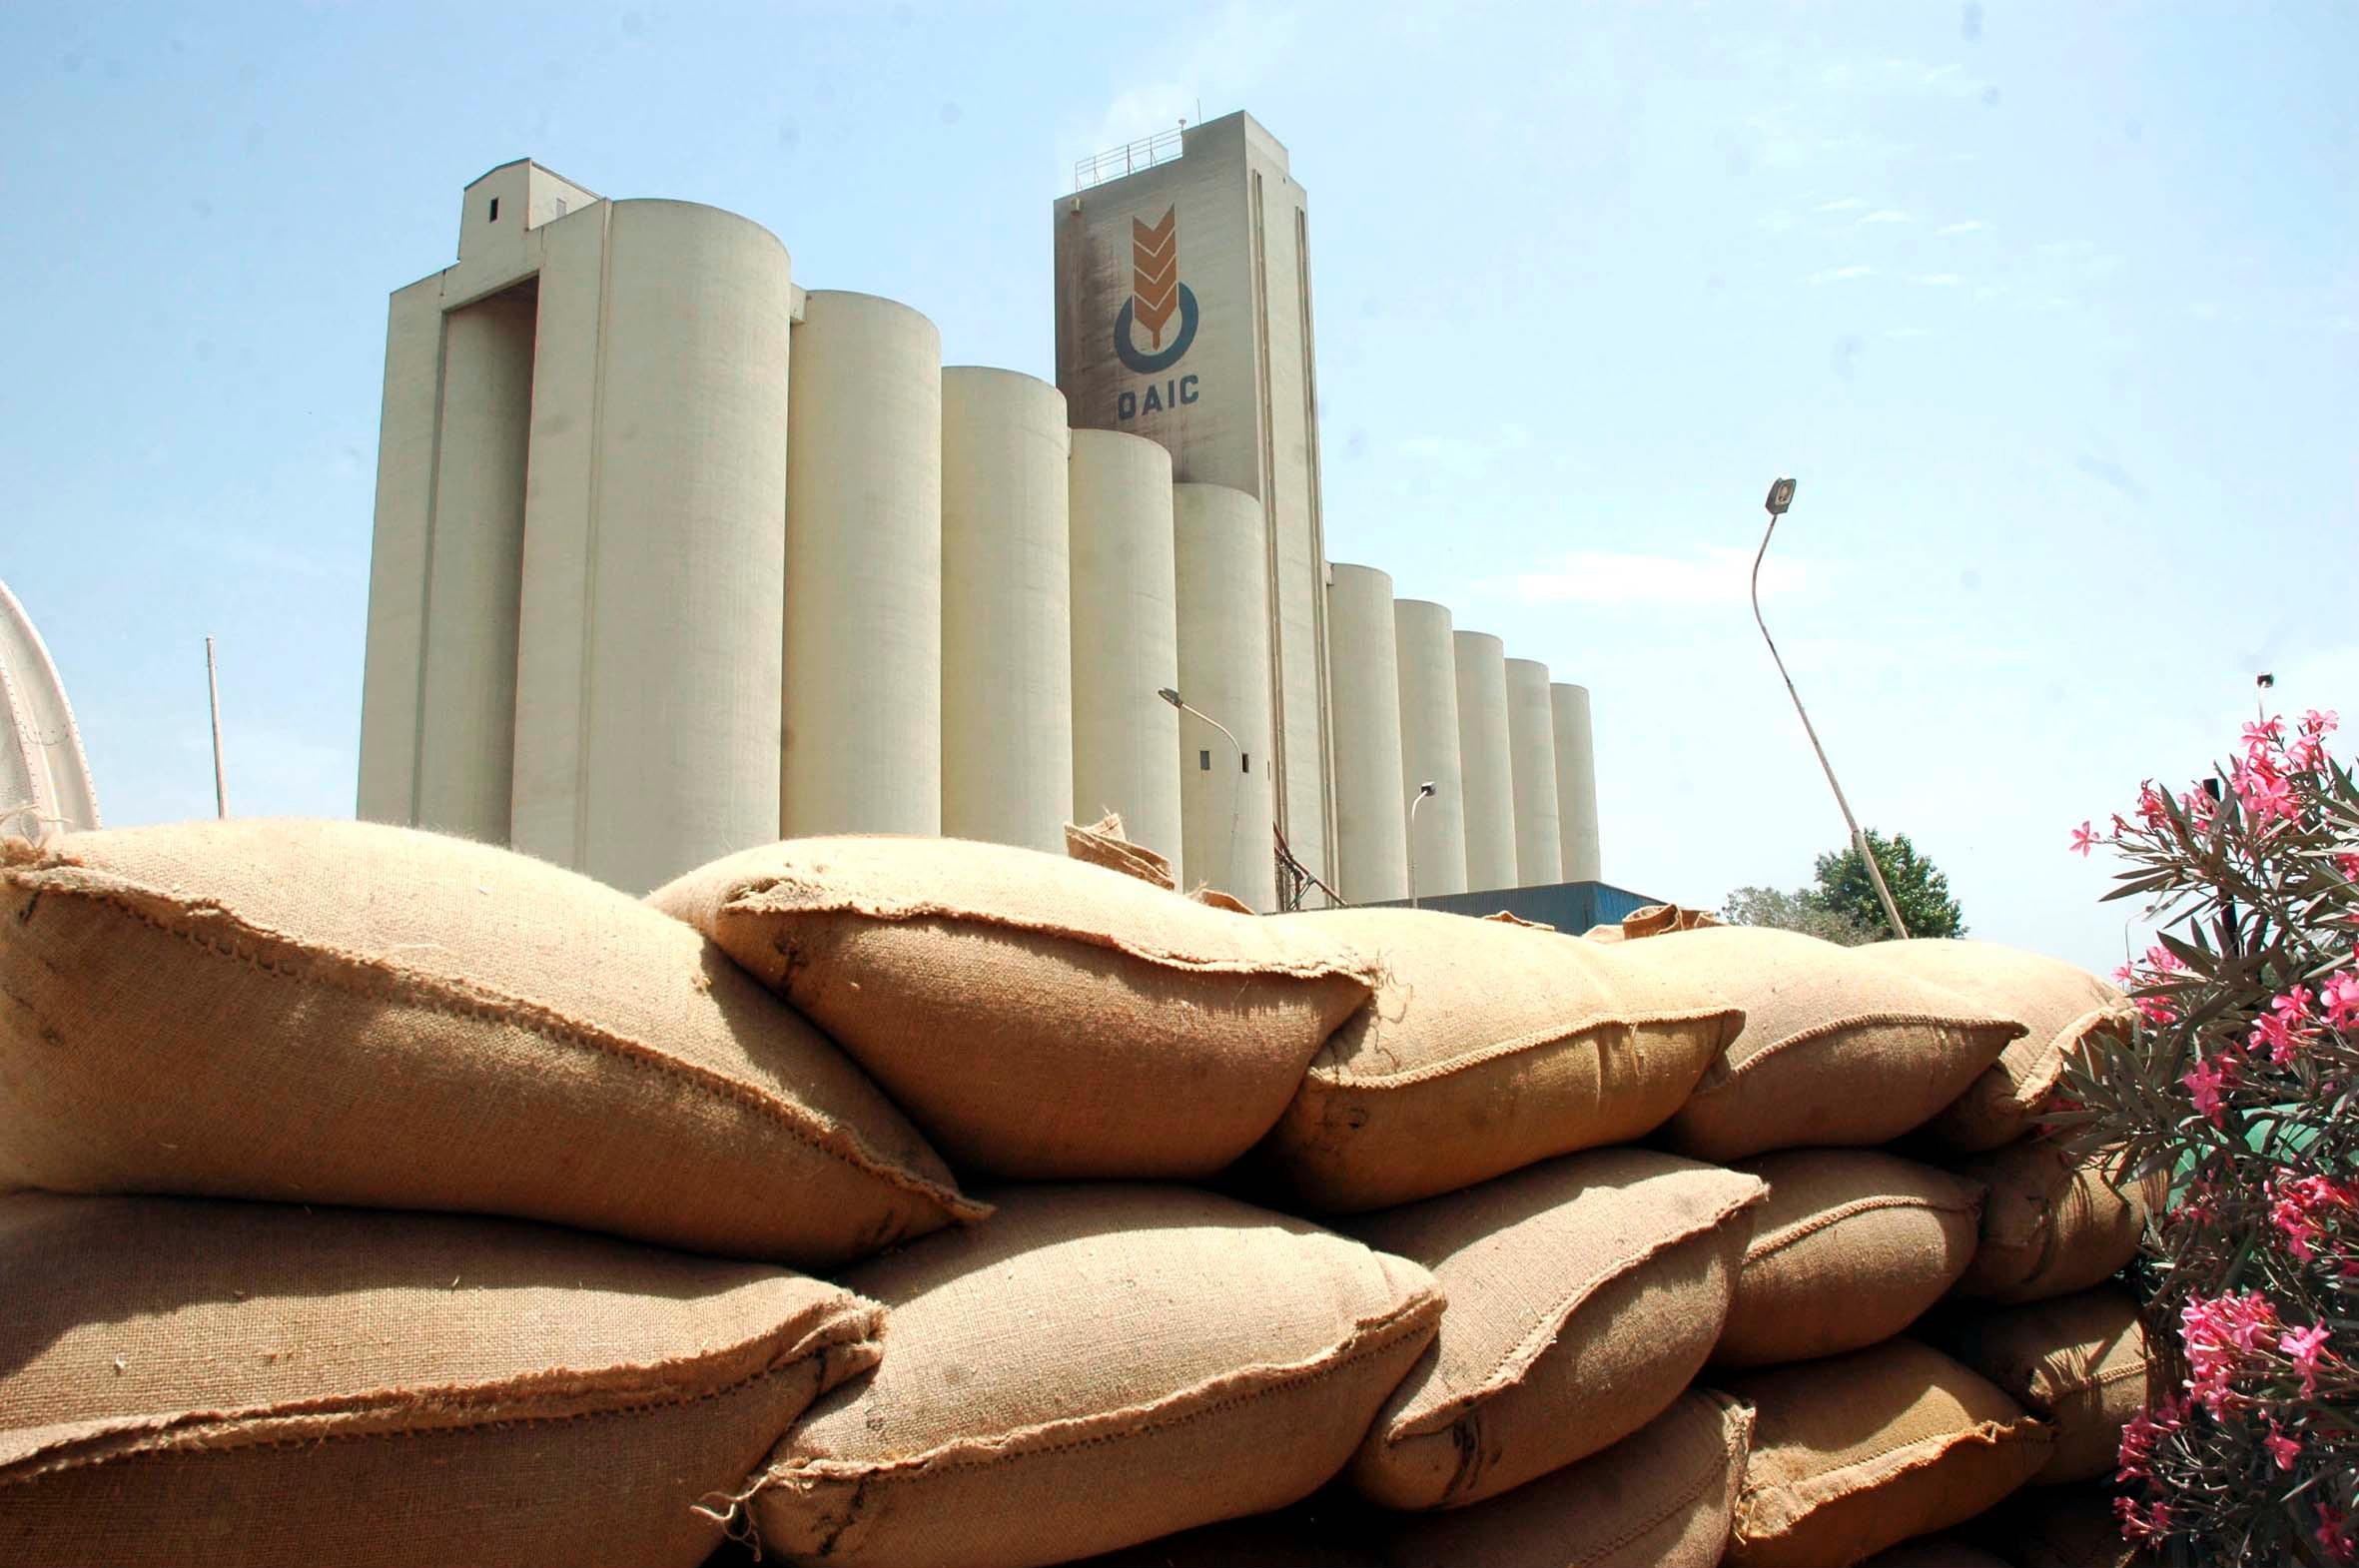 La facture d'importation des céréales en 2015 avait été de 3,43 milliards de dollars. New Press